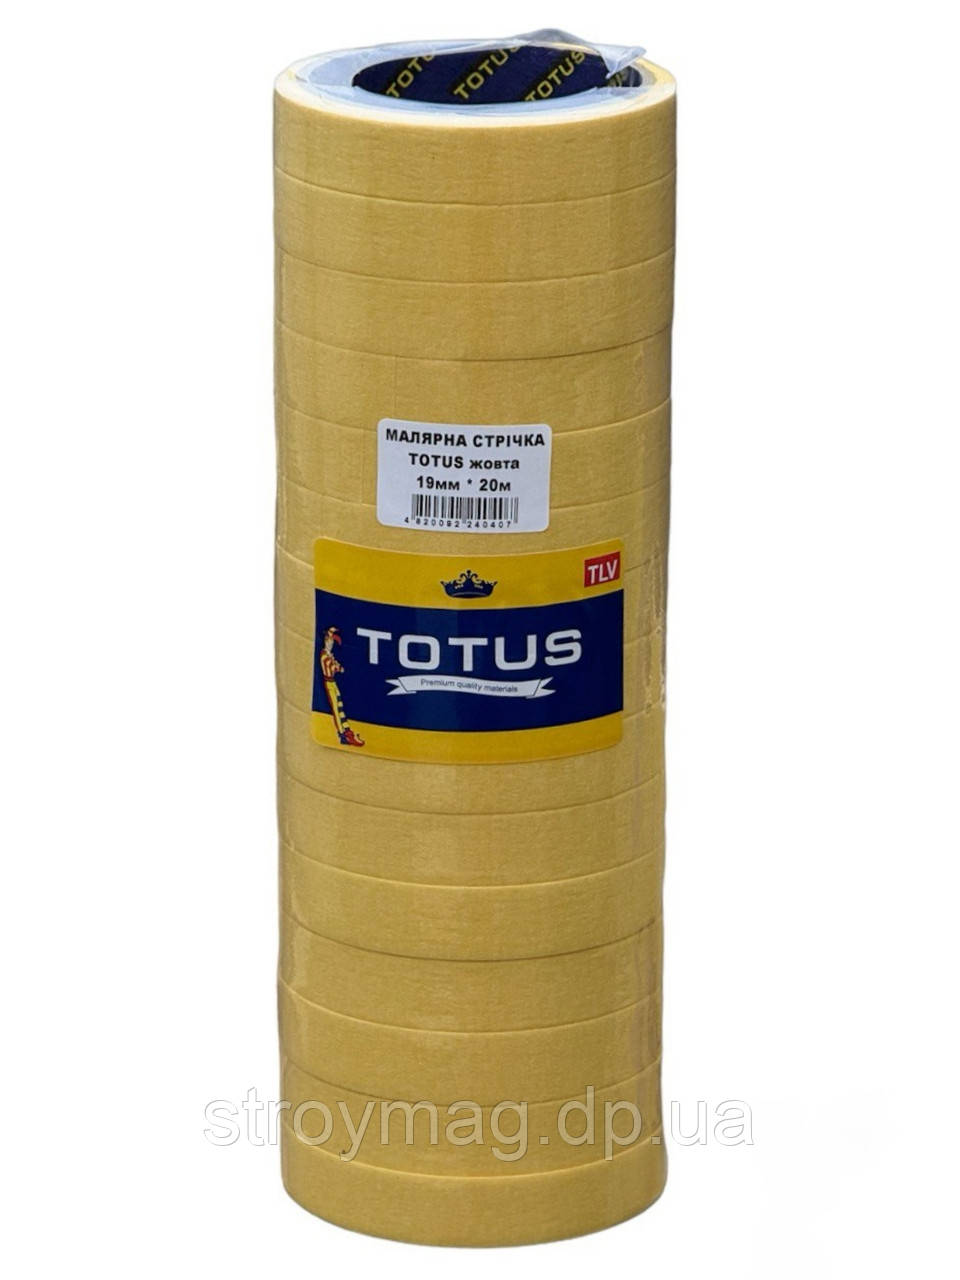 Малярська стрічка Totus 19мм*20м жовта (15шт./180шт. ящик)